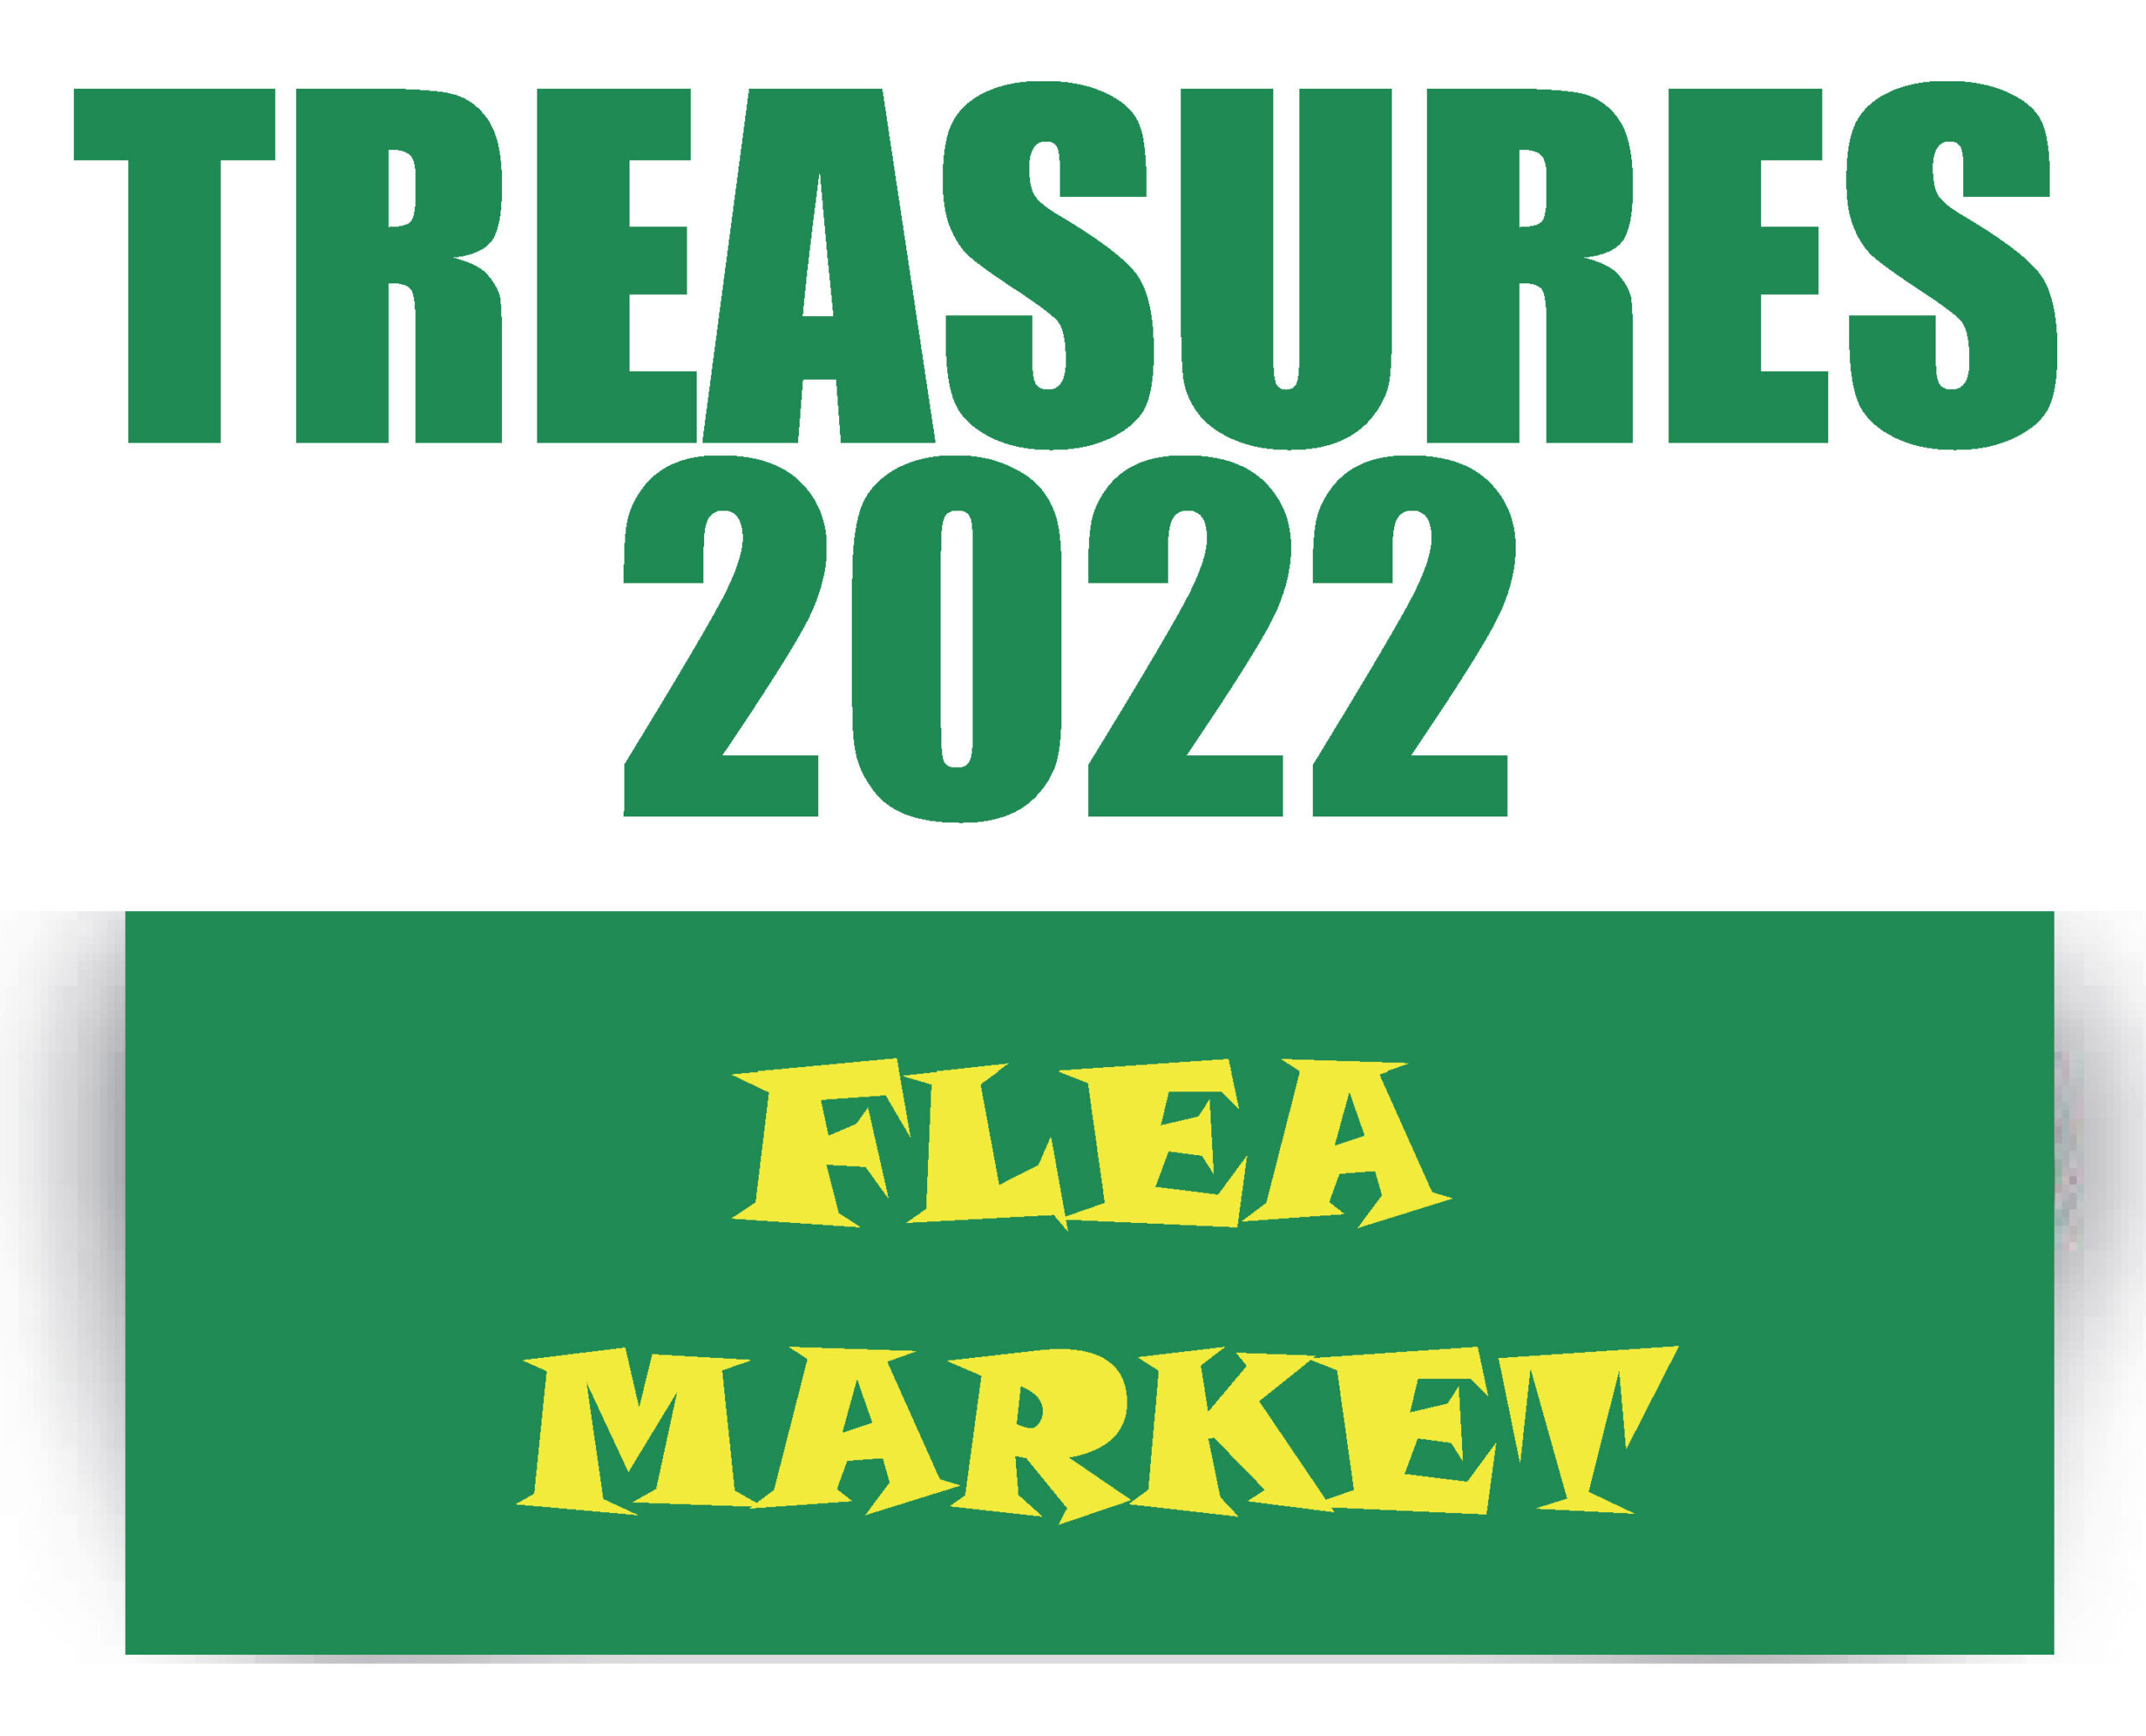 Treasures Flea Market